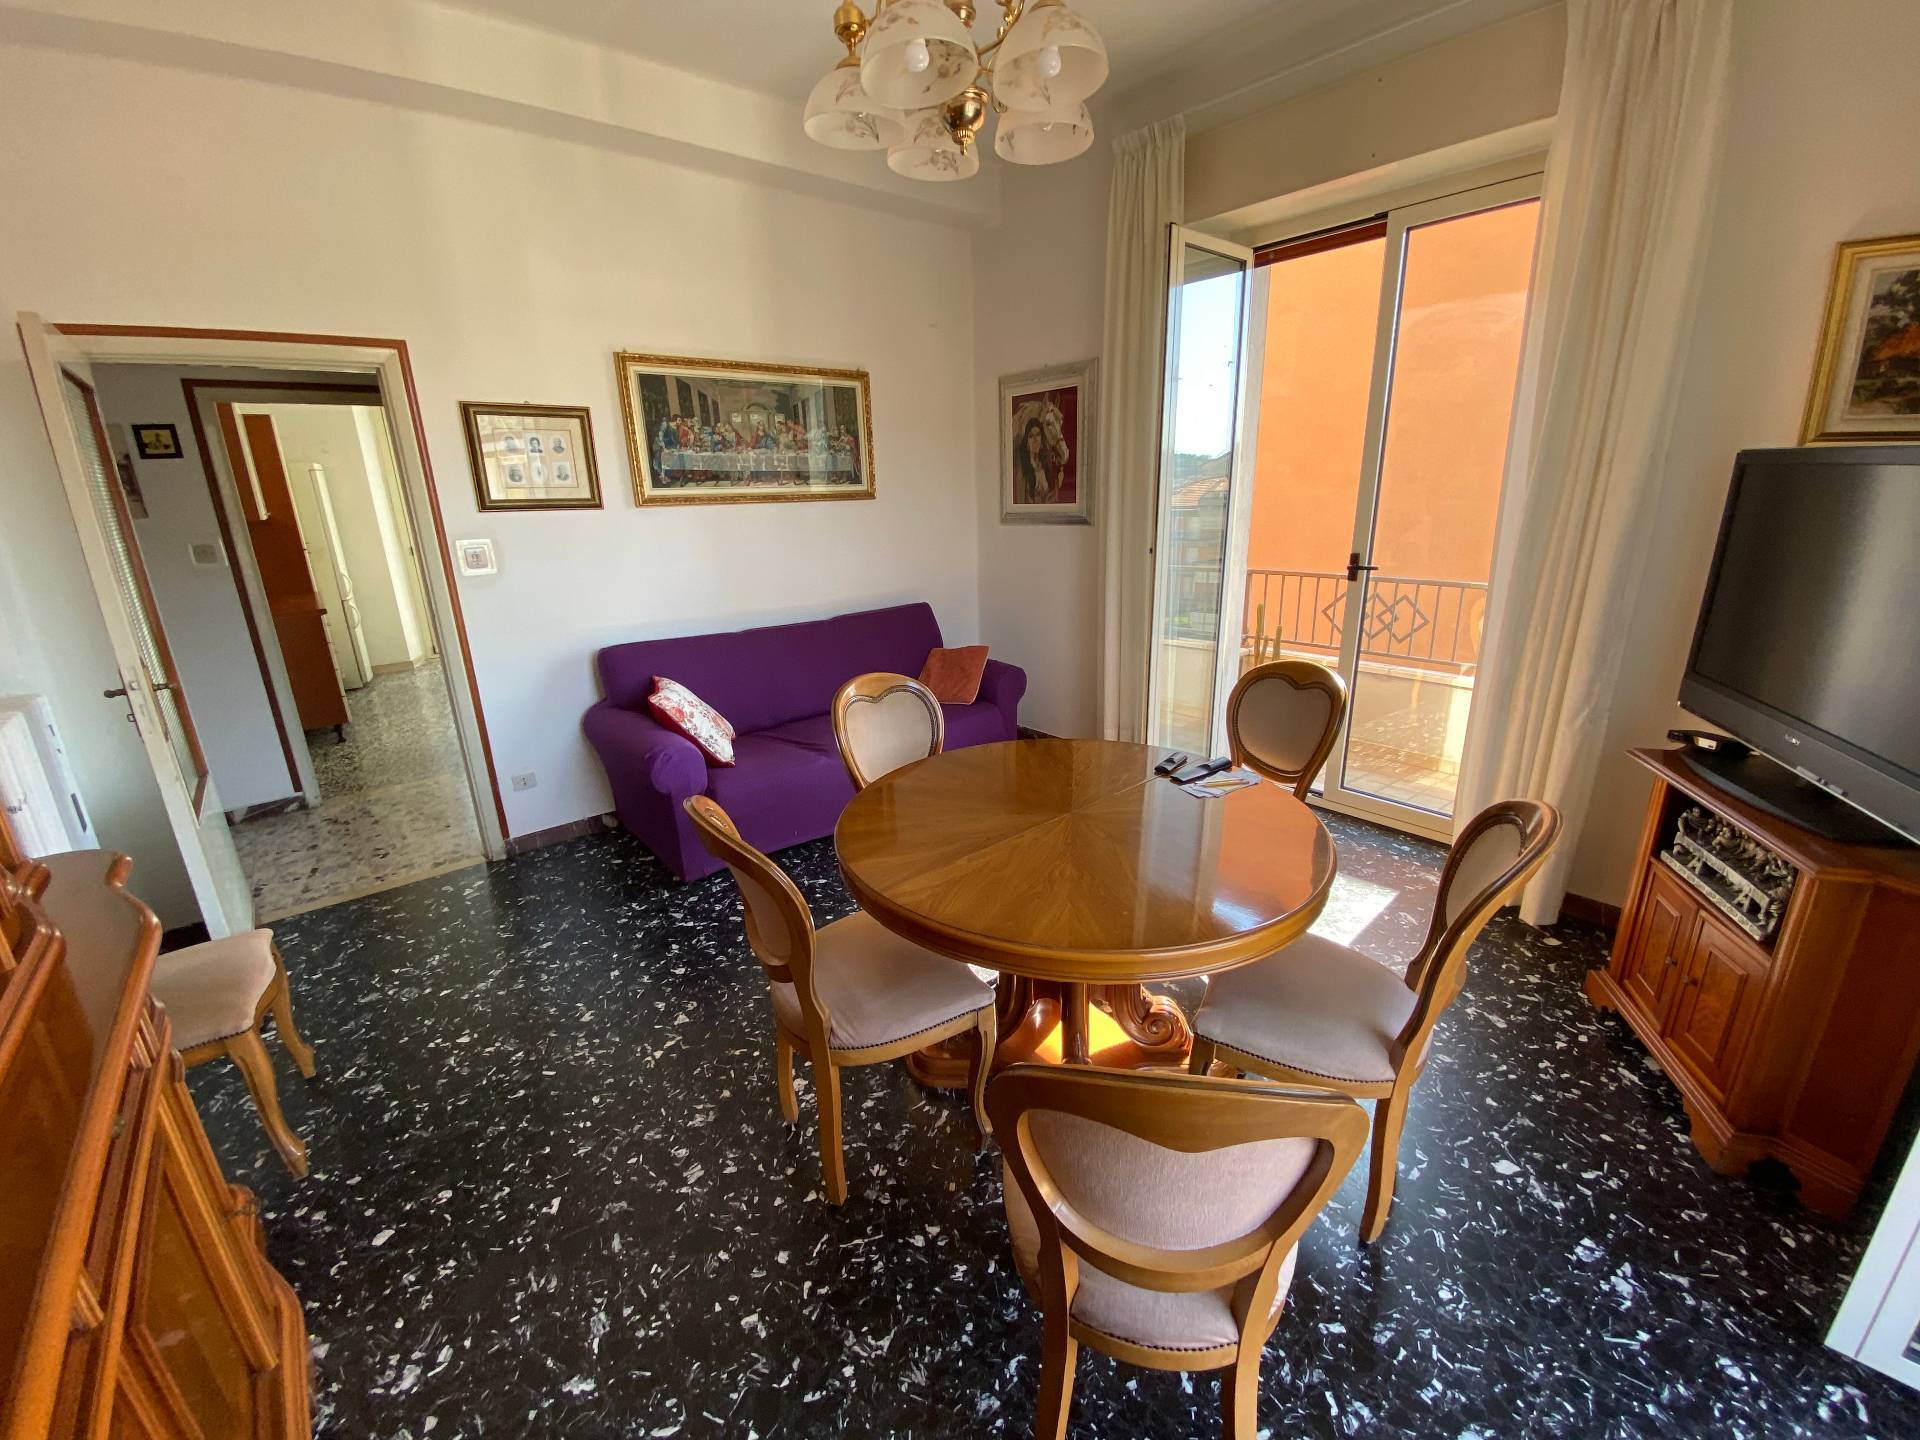 Appartamento in vendita, Ascoli Piceno borgo solest